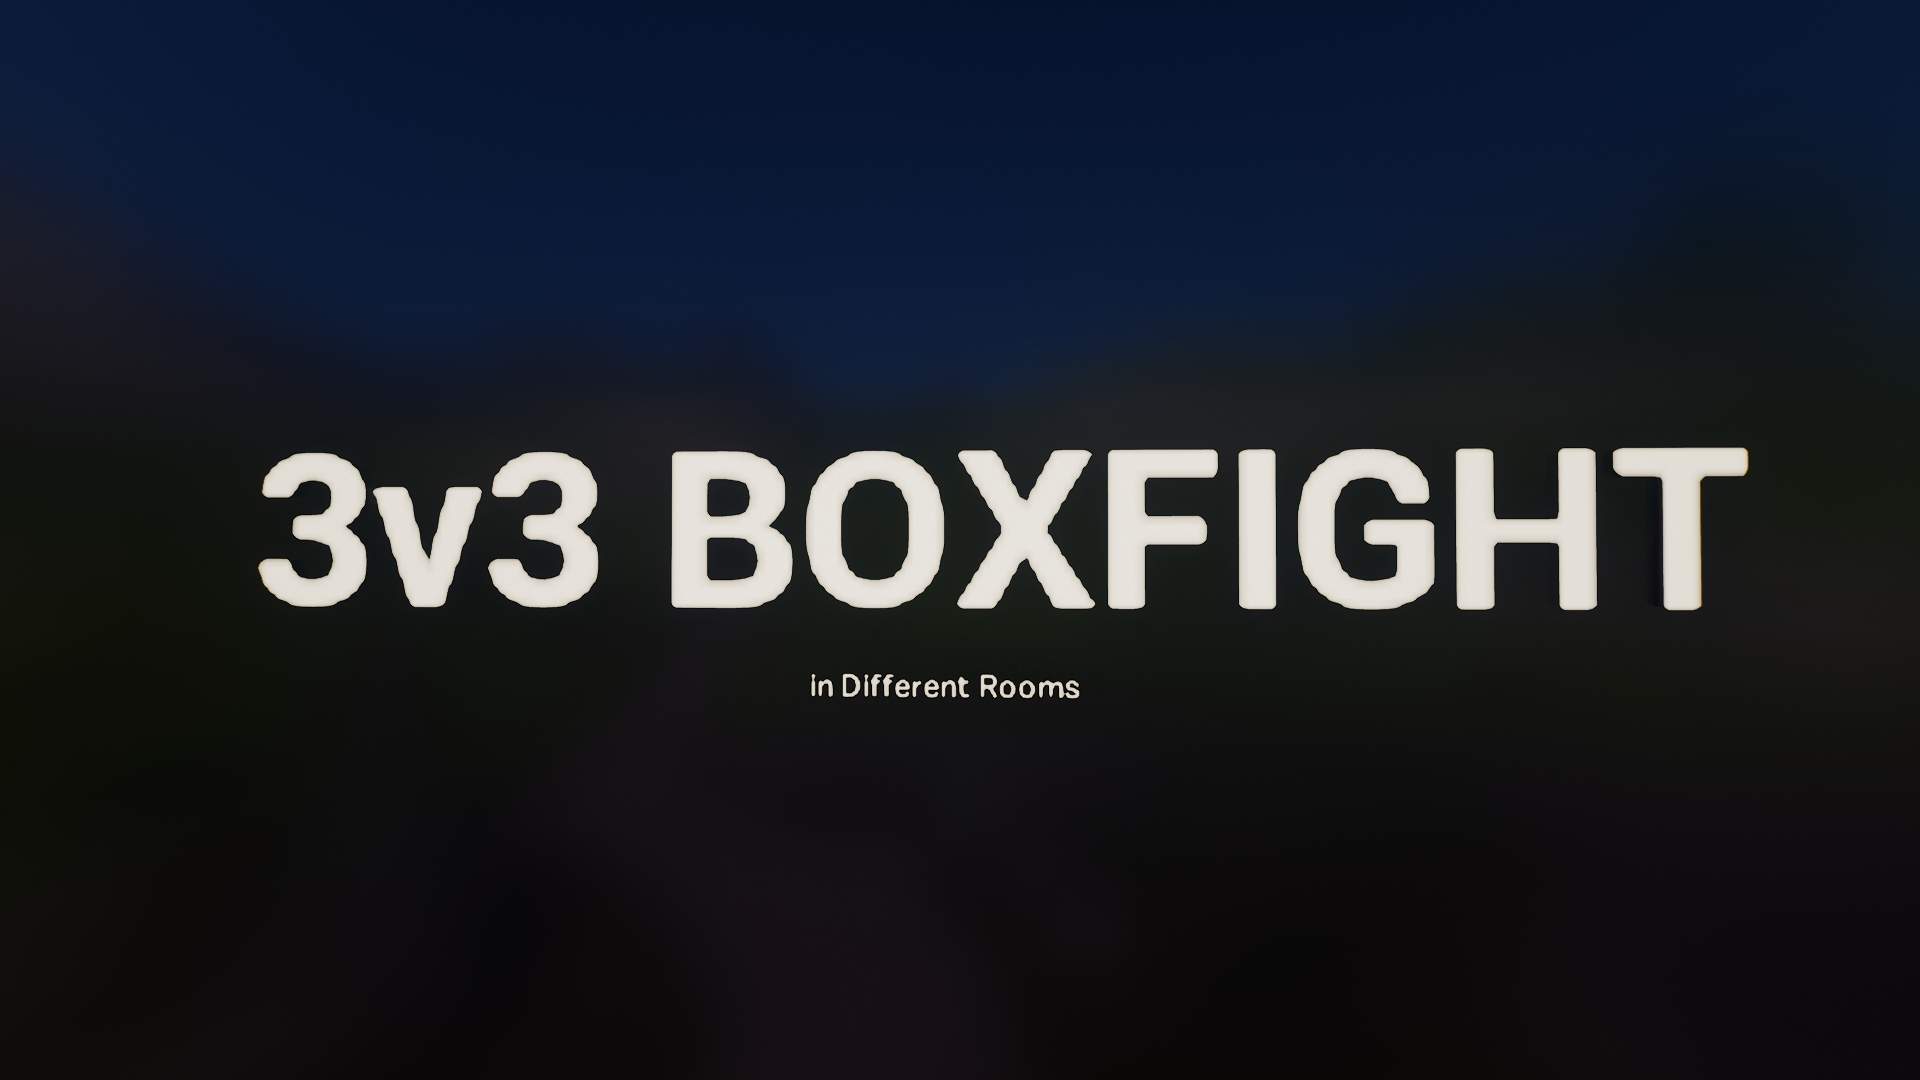 3V3 BOXFIGHT